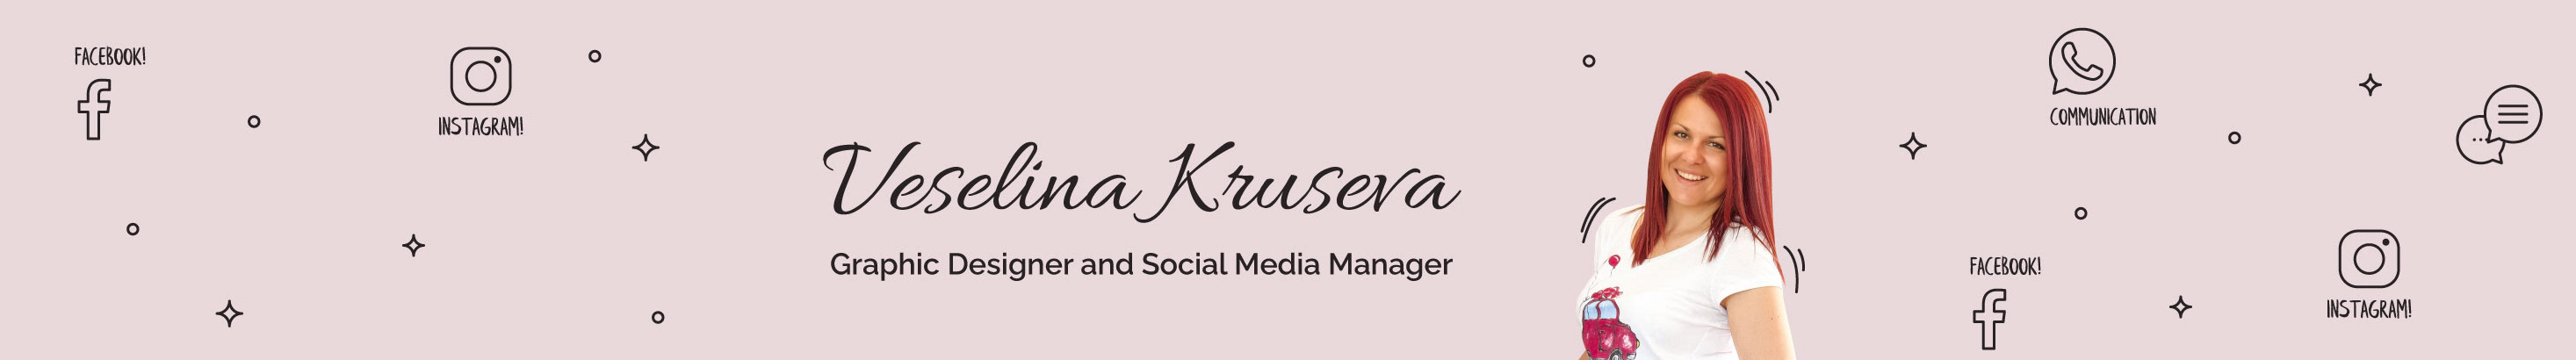 Veselina Kruseva's profile banner